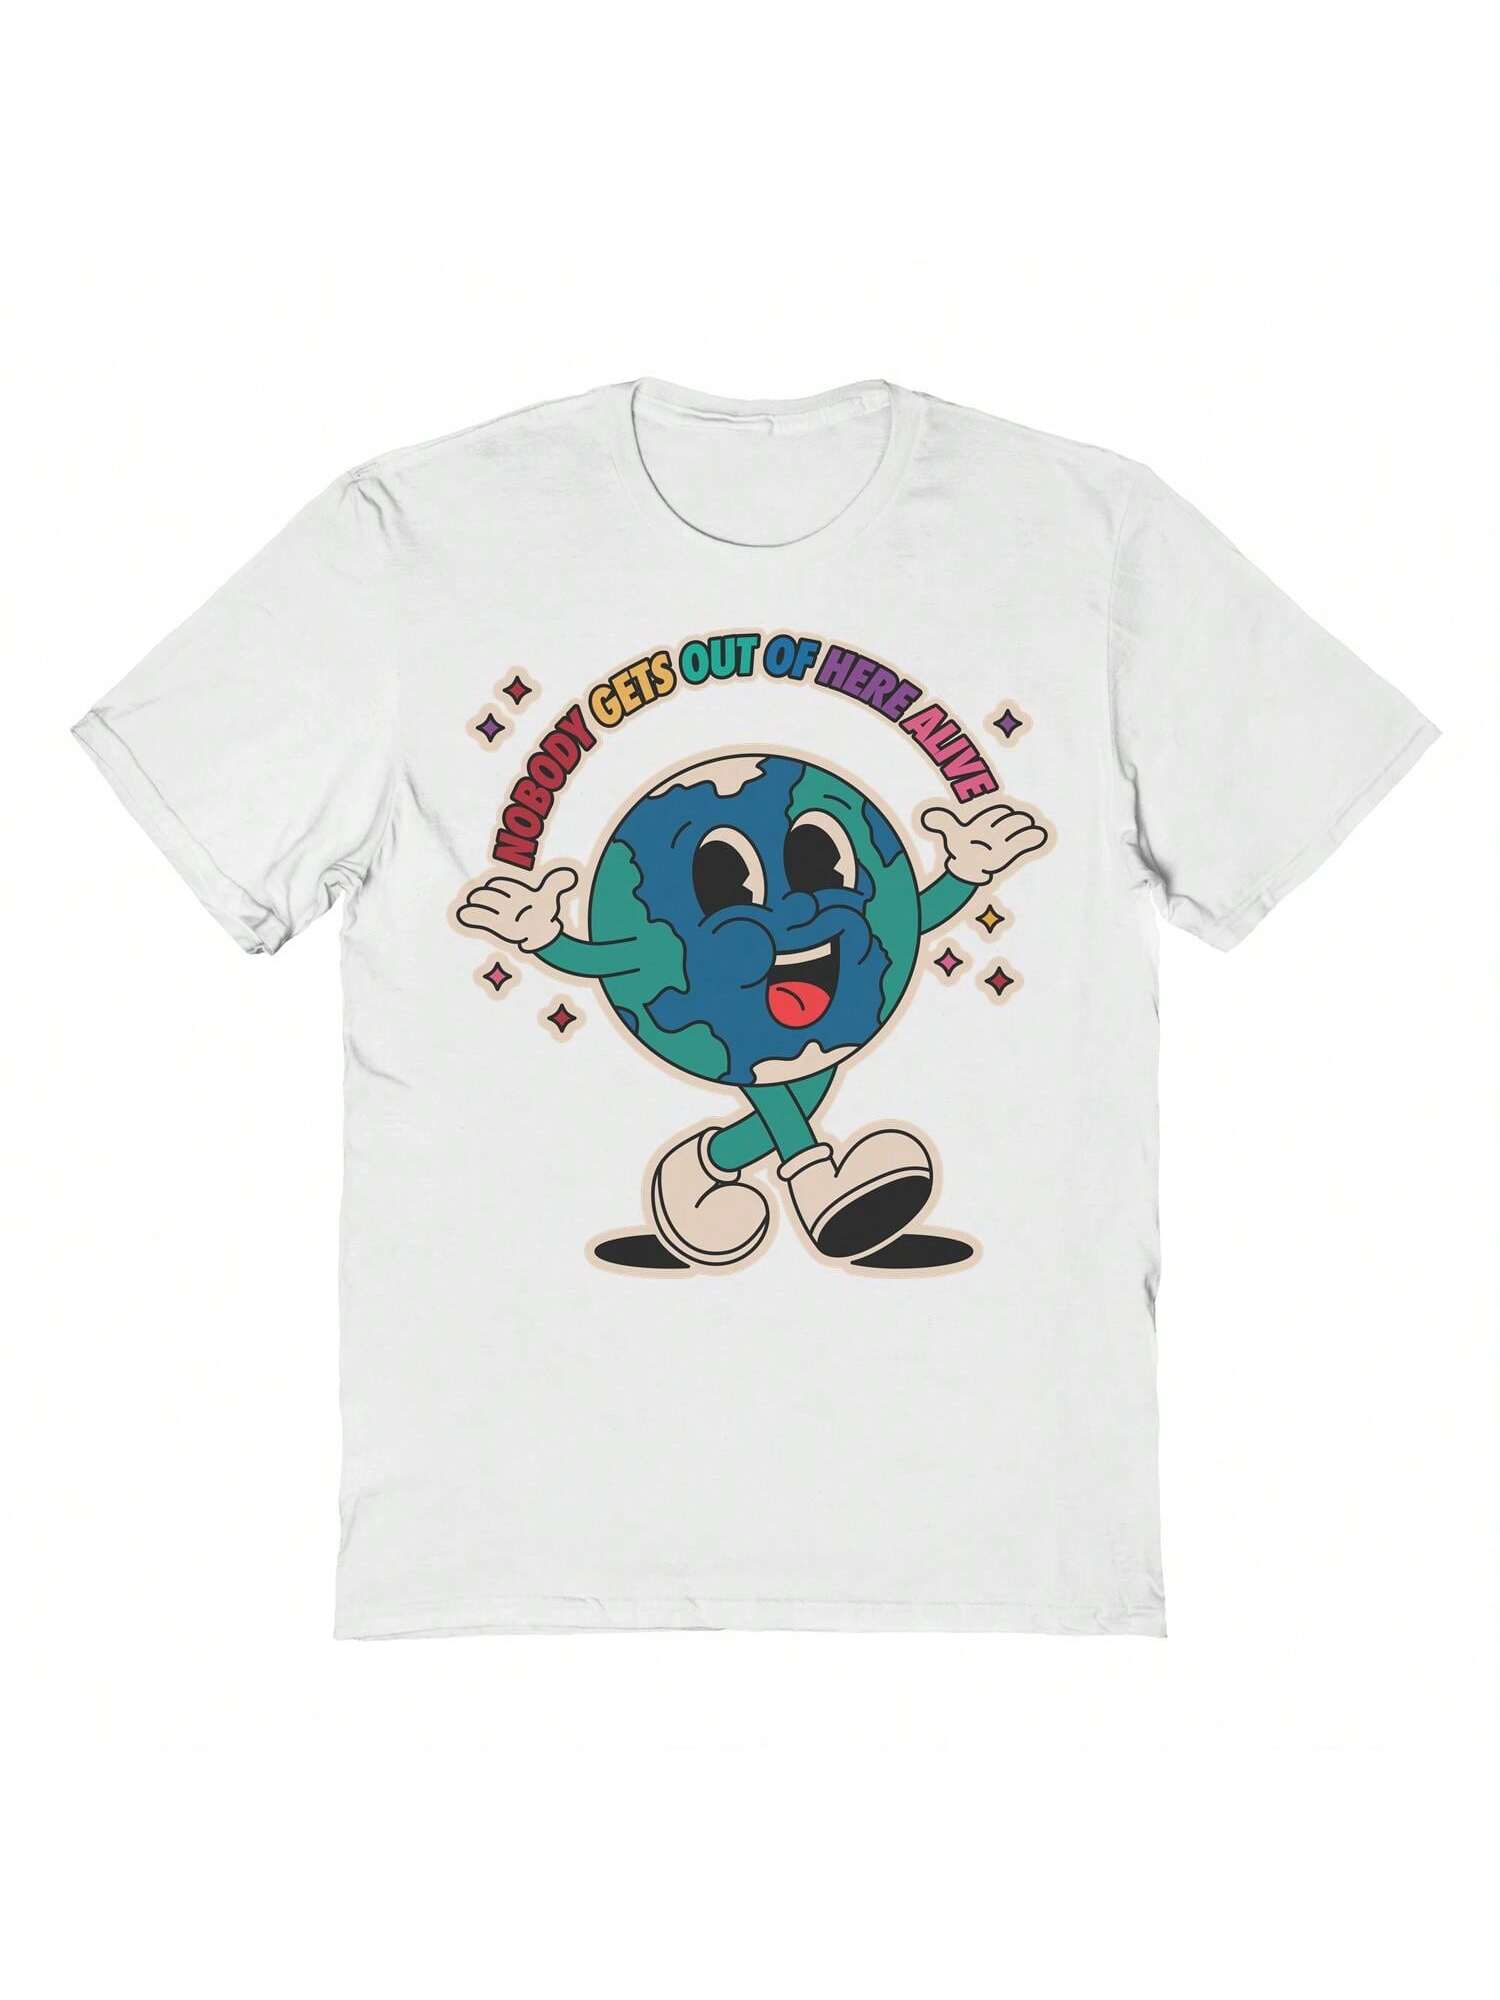 Хлопковая футболка унисекс с короткими рукавами и графикой Pop Creature Alive, белый